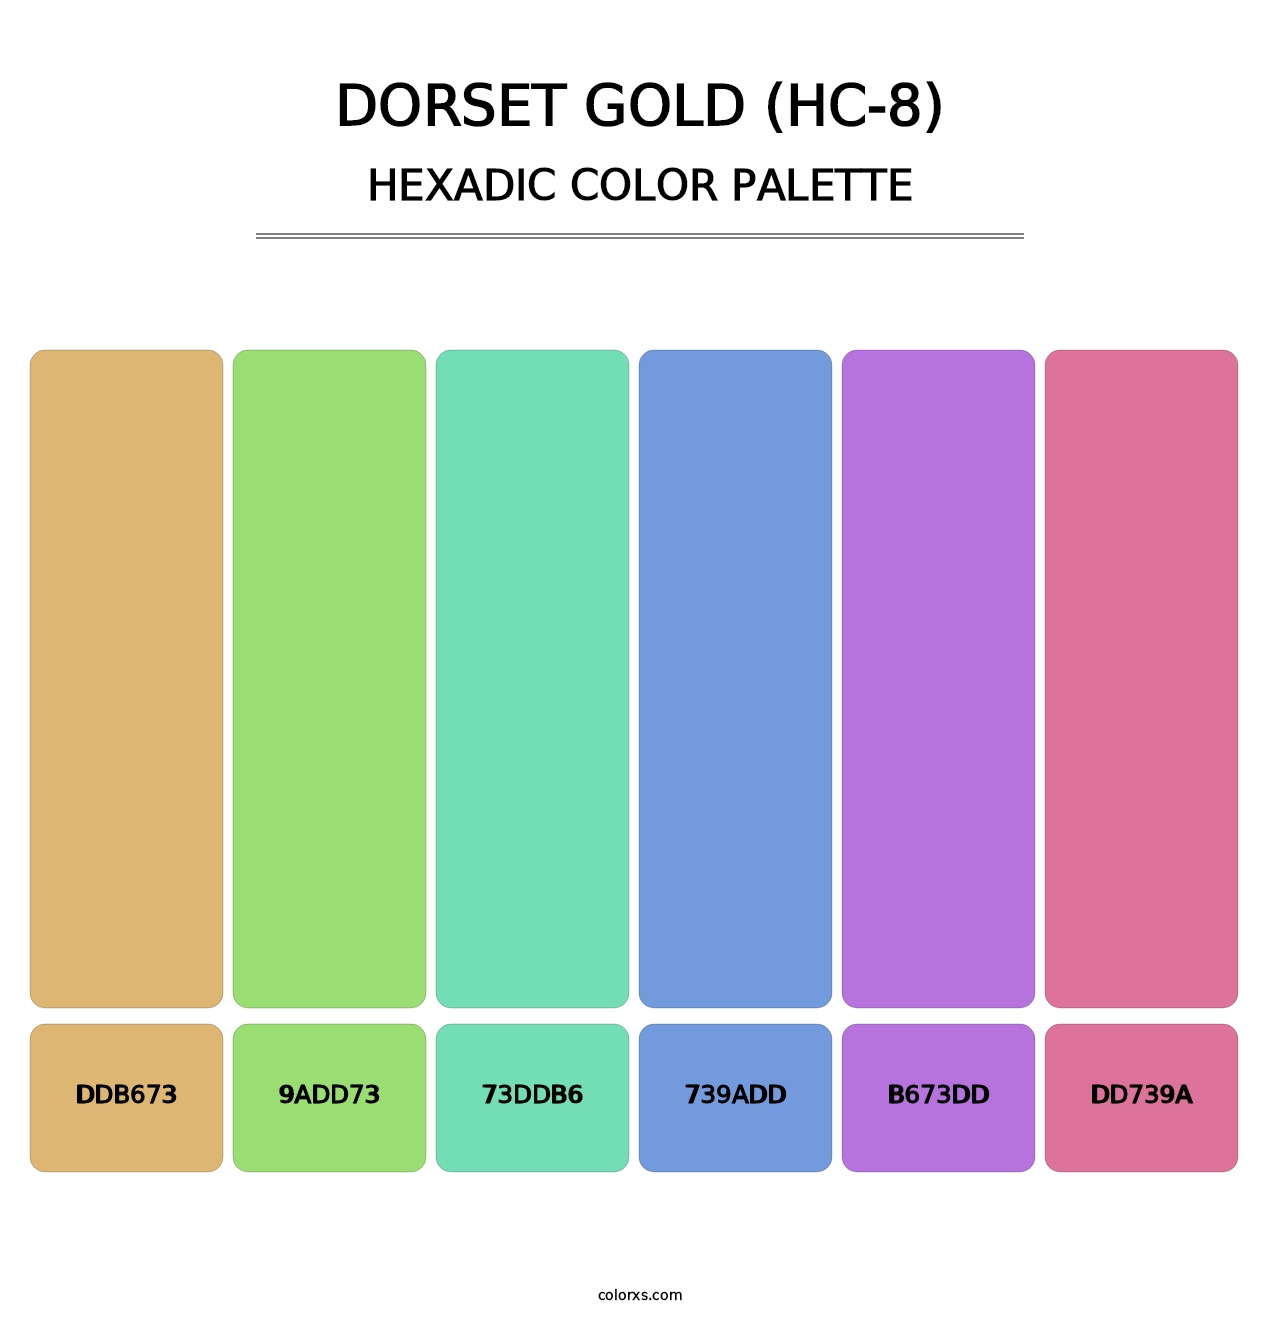 Dorset Gold (HC-8) - Hexadic Color Palette